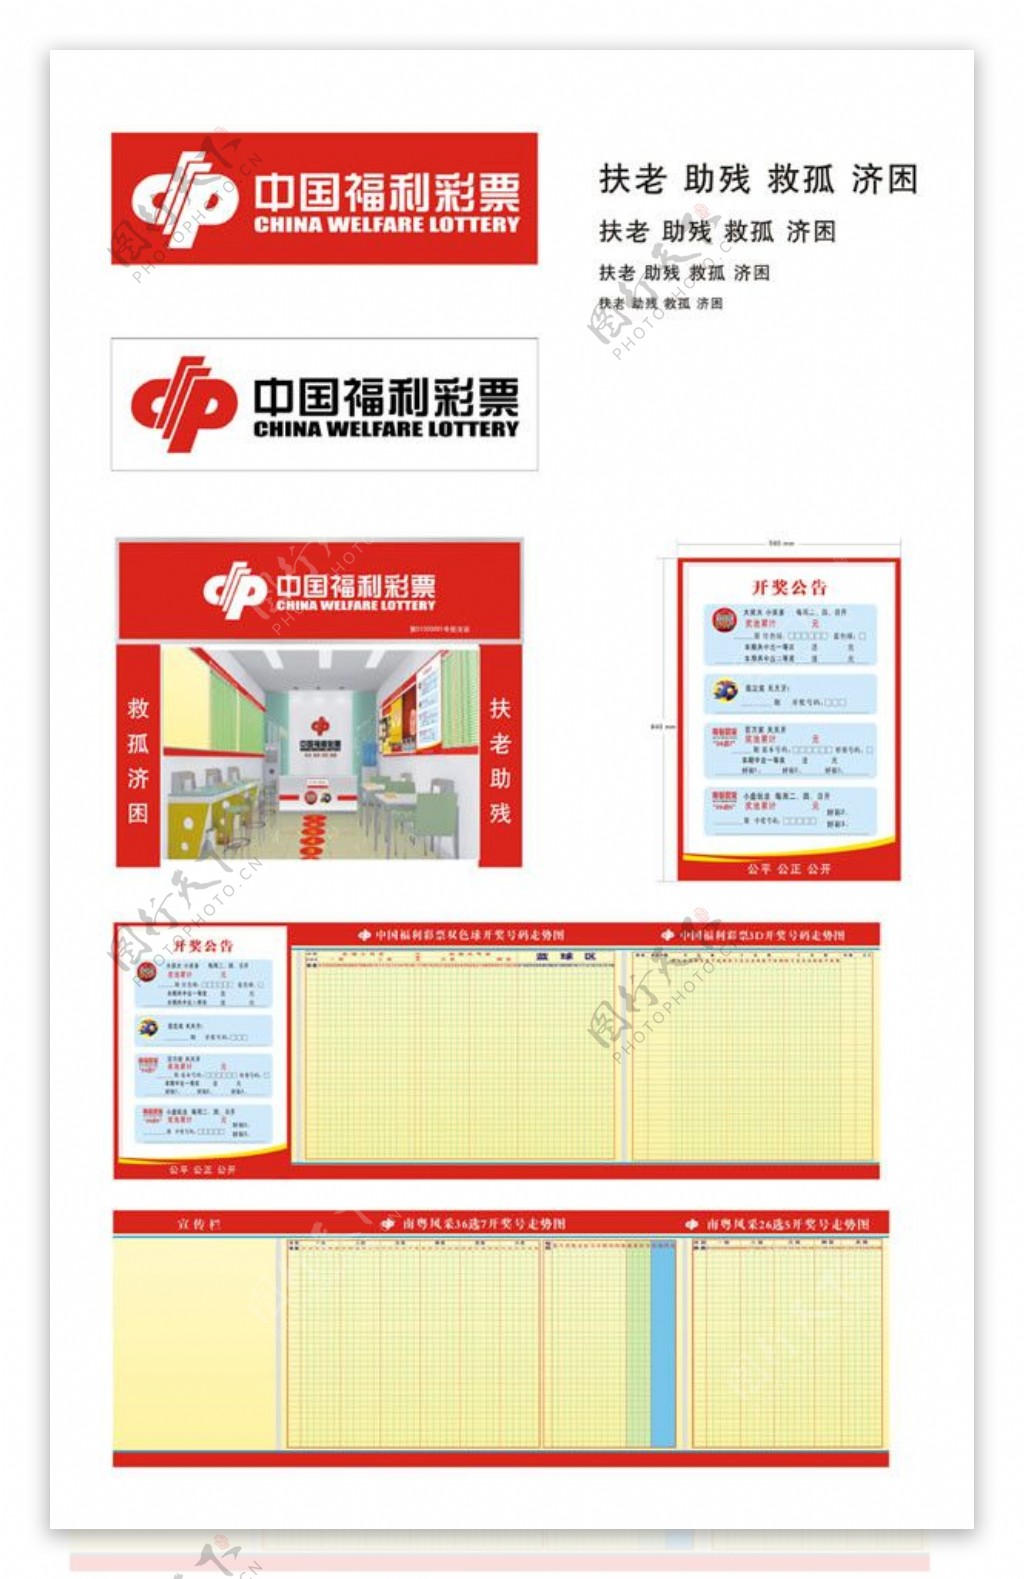 中国福利彩票投注站形象装修手册图片